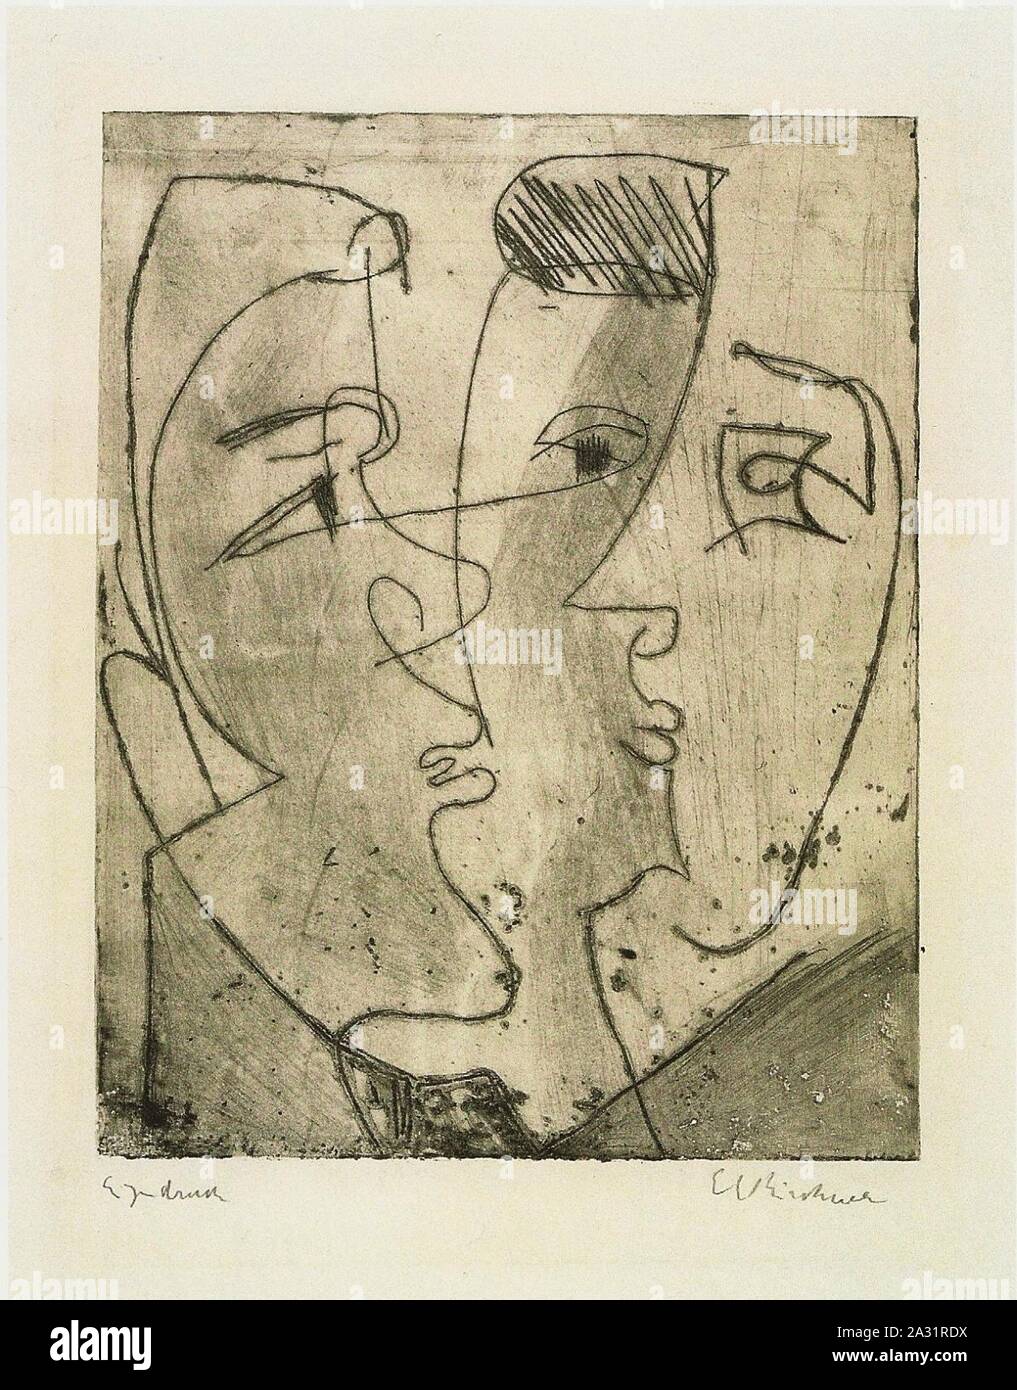 Ernst Ludwig Kirchner - Drei Gesichter -1929. Stock Photo